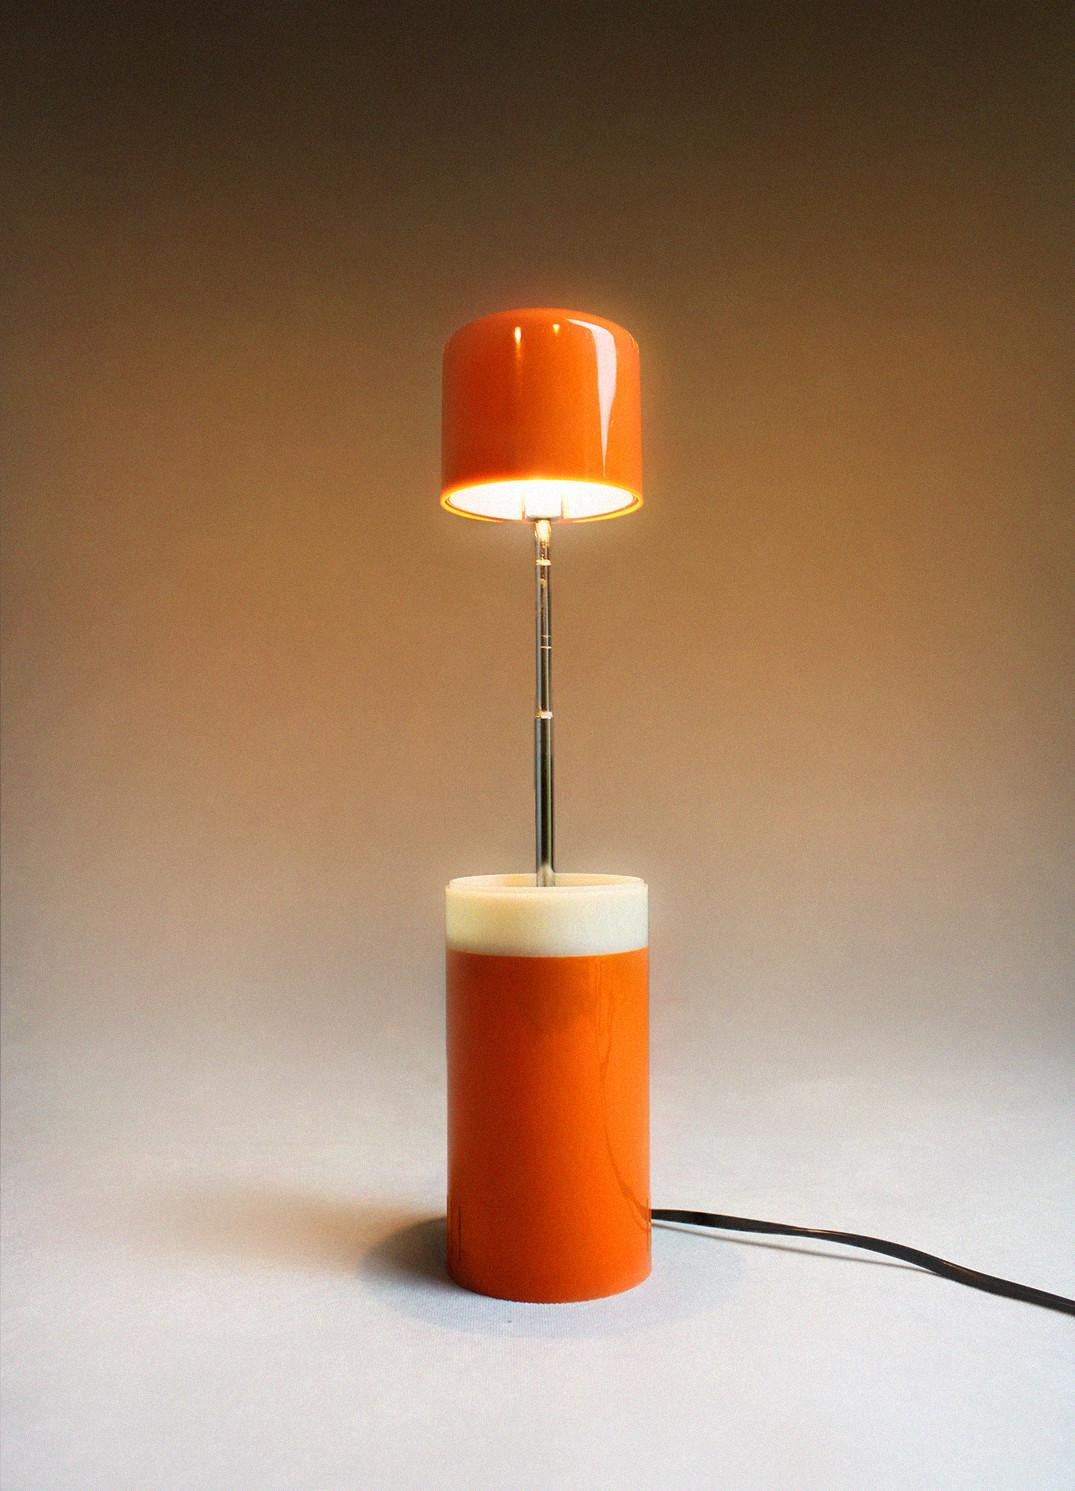 Cette lampe de bureau extensible divertissante est un atout pour votre intérieur. La couleur orange associée au design fait que cette lampe rétro s'inscrit dans le style de l'ère spatiale. Le système easy permet d'ajuster la lampe de bureau en